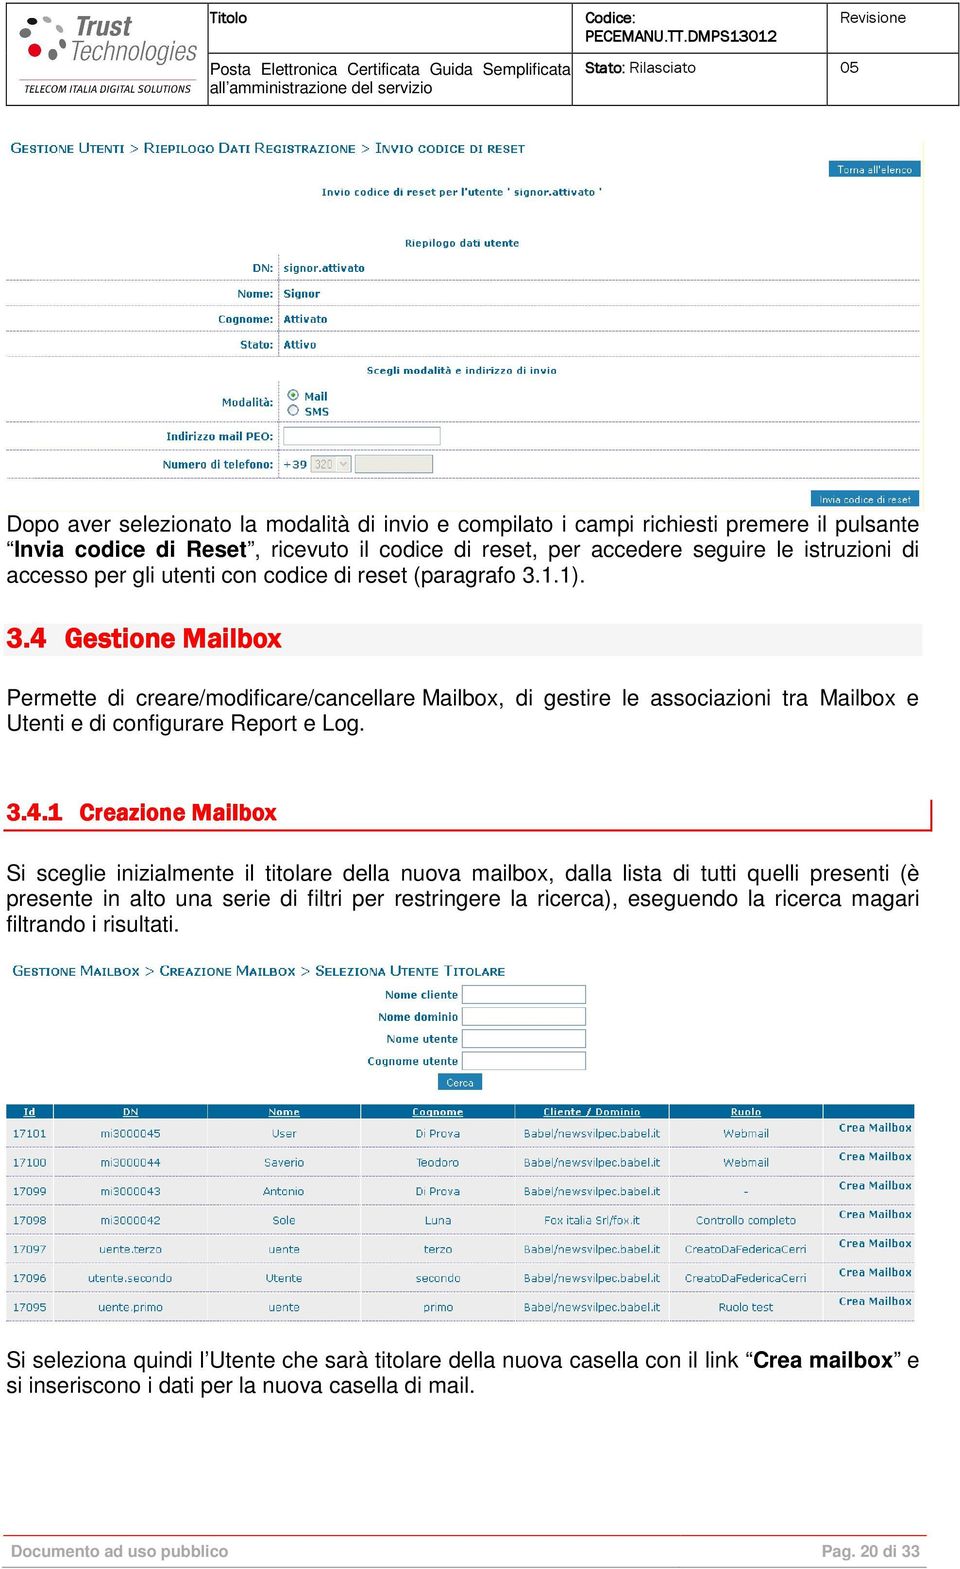 Gestione Mailbox Permette di creare/modificare/cancellare Mailbox, di gestire le associazioni tra Mailbox e Utenti e di configurare Report e Log. 3.4.